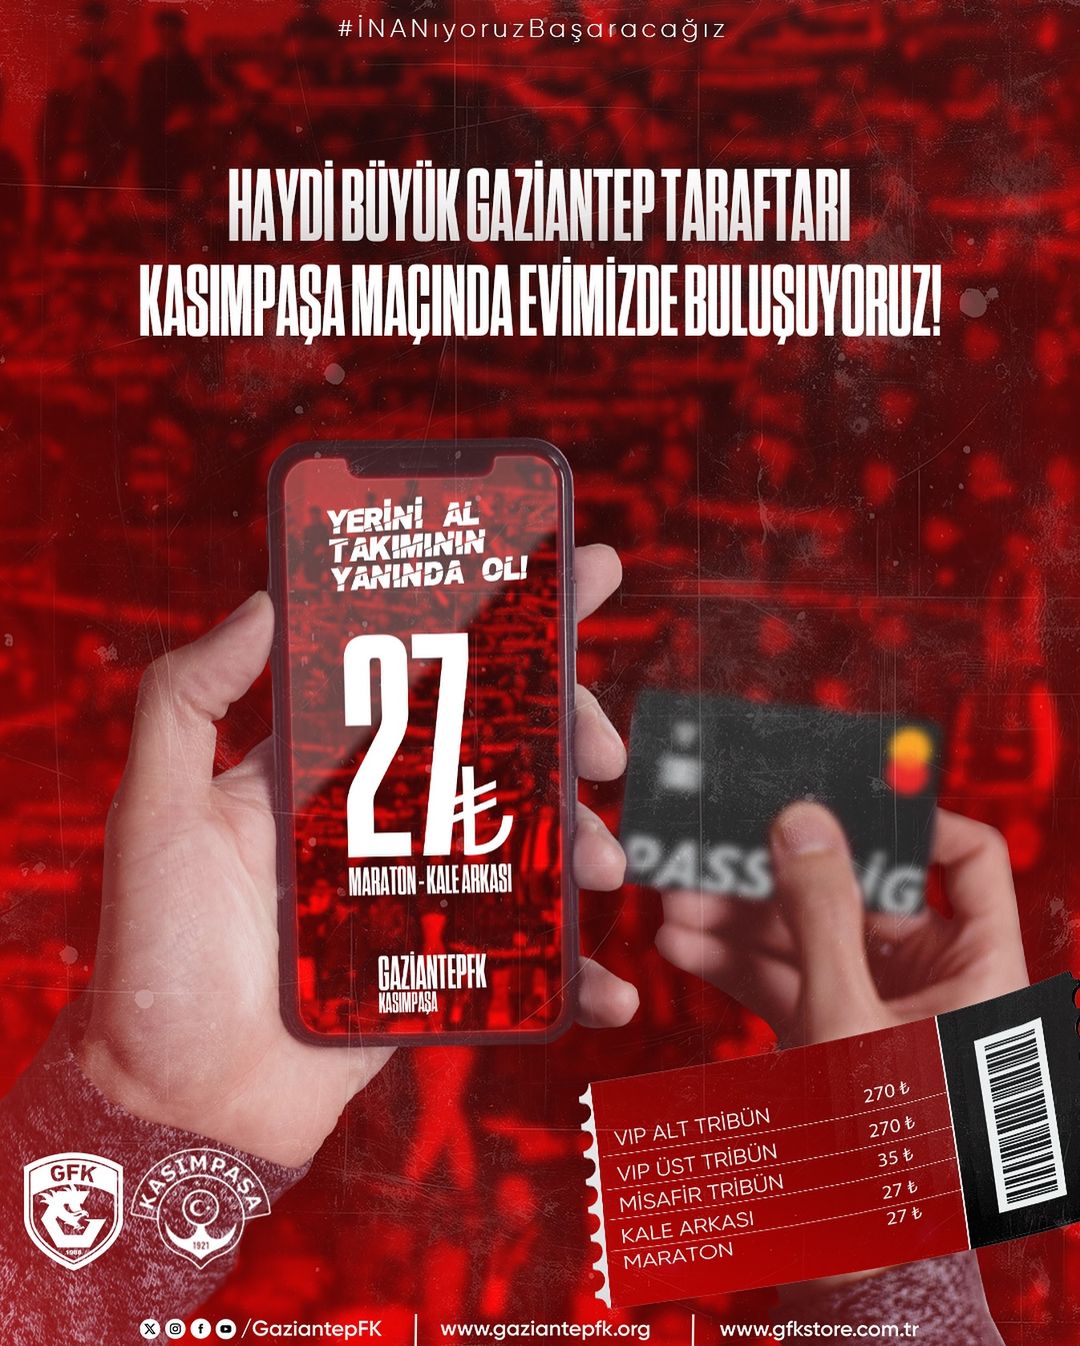 Gaziantep FK, Süper Lig'de Kasımpaşa'ya karşı mücadele edecek!